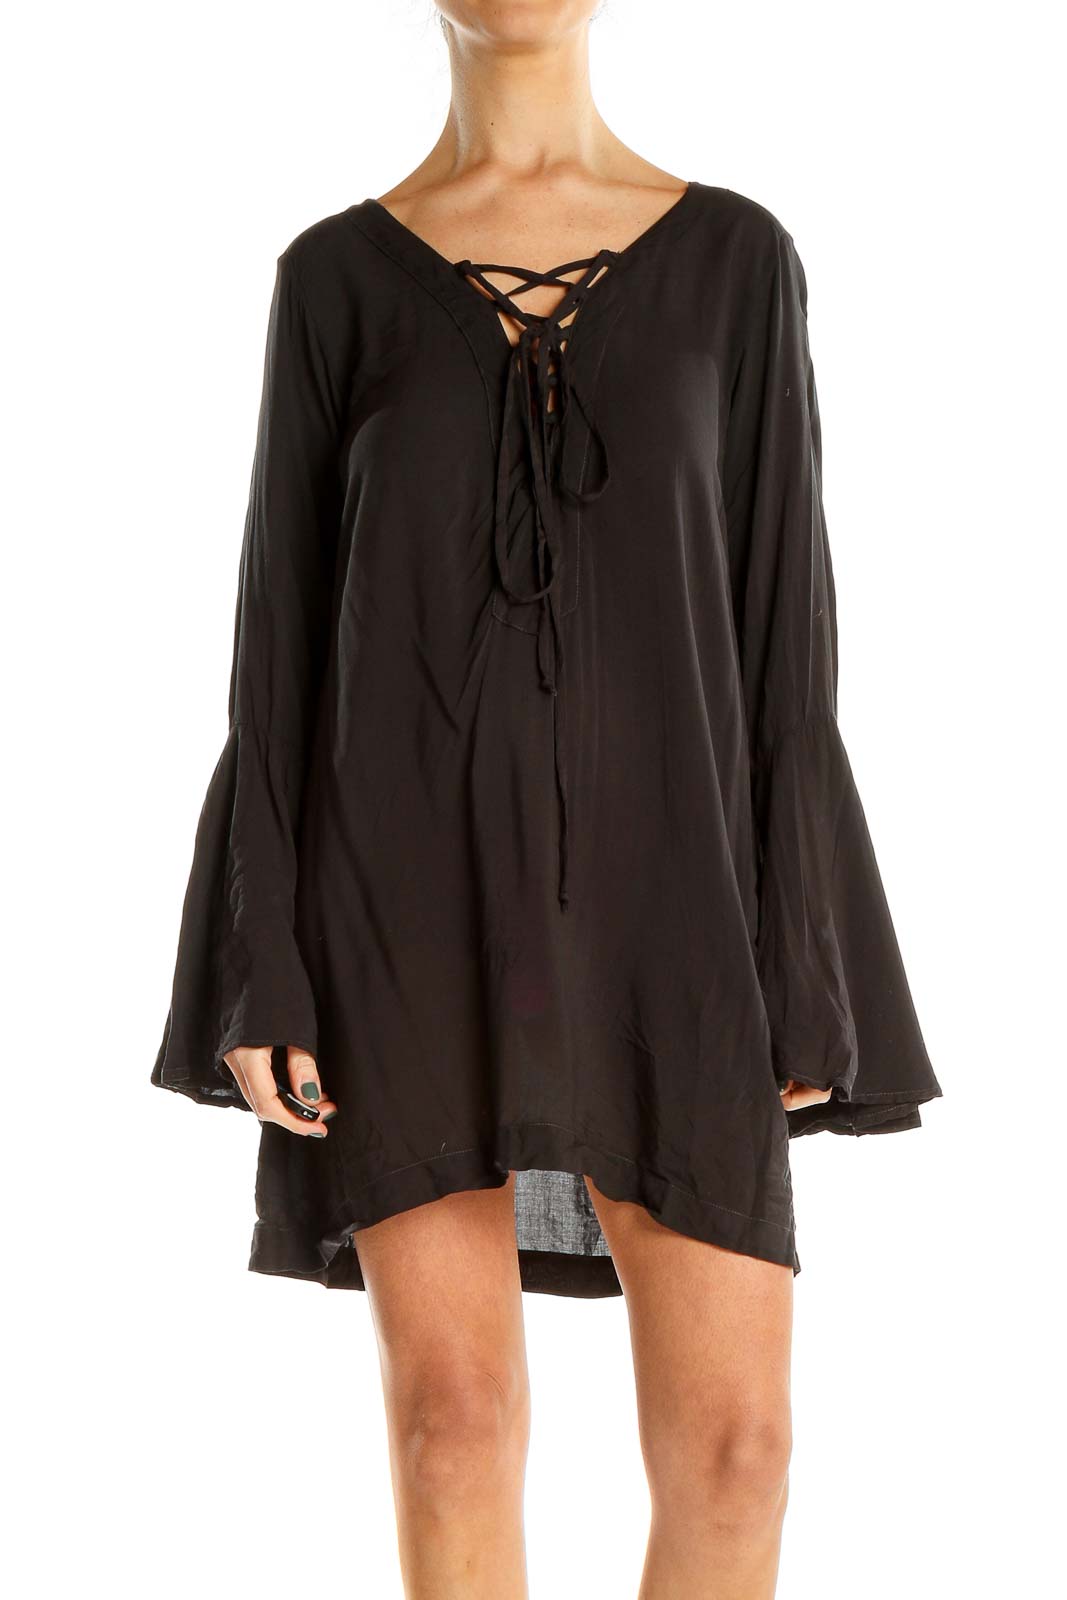 Black Lace Up Neckline Mini Dress Front